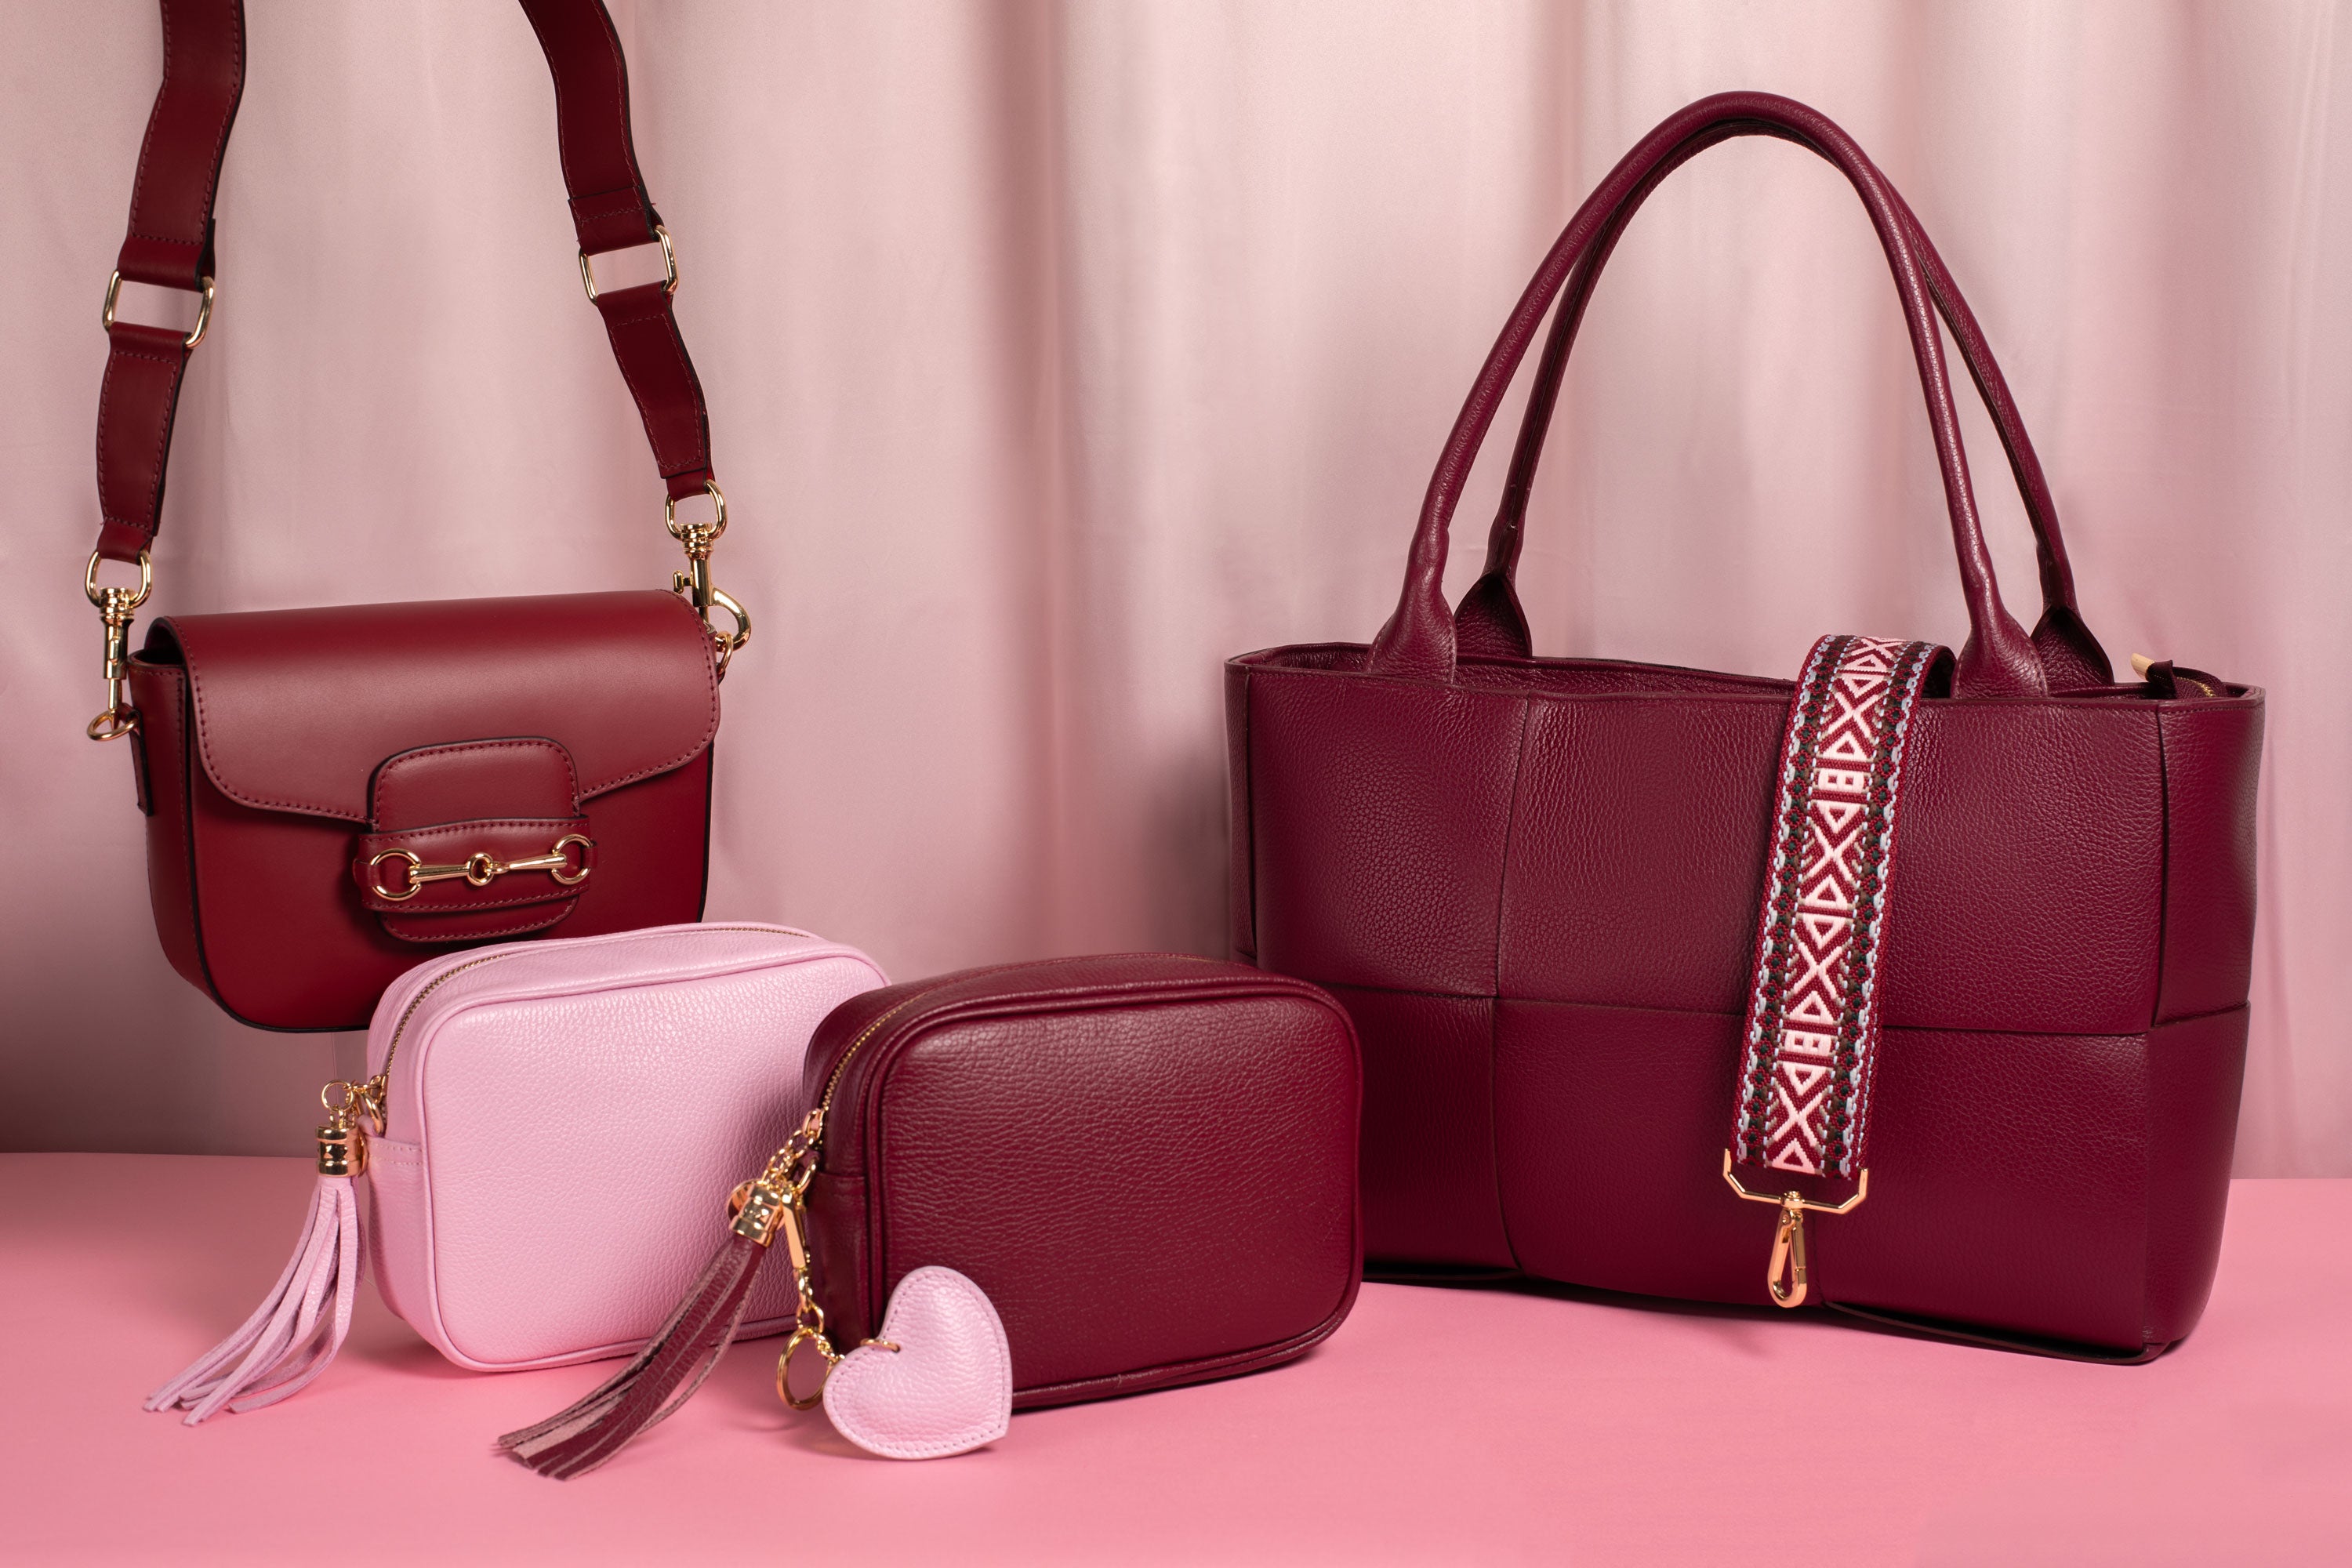 Handbags, Purses, Backpacks - Smith & Canova